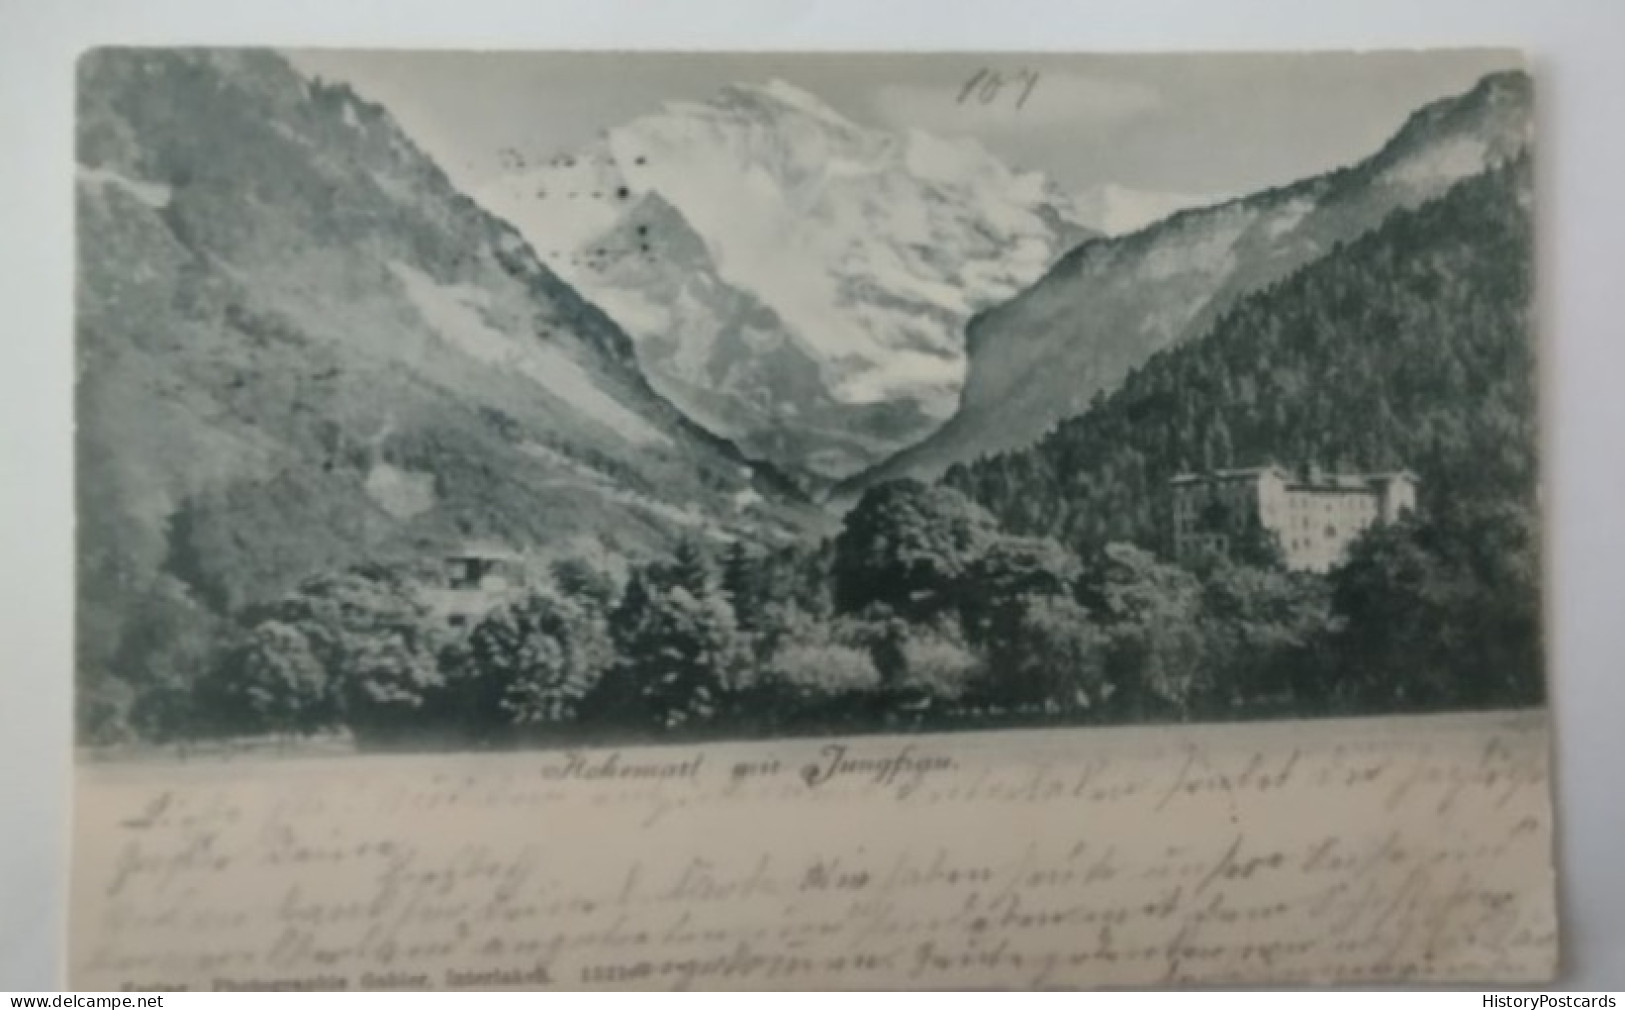 Hohemart Mit Jungfrau, Interlaken, 1901 - Interlaken